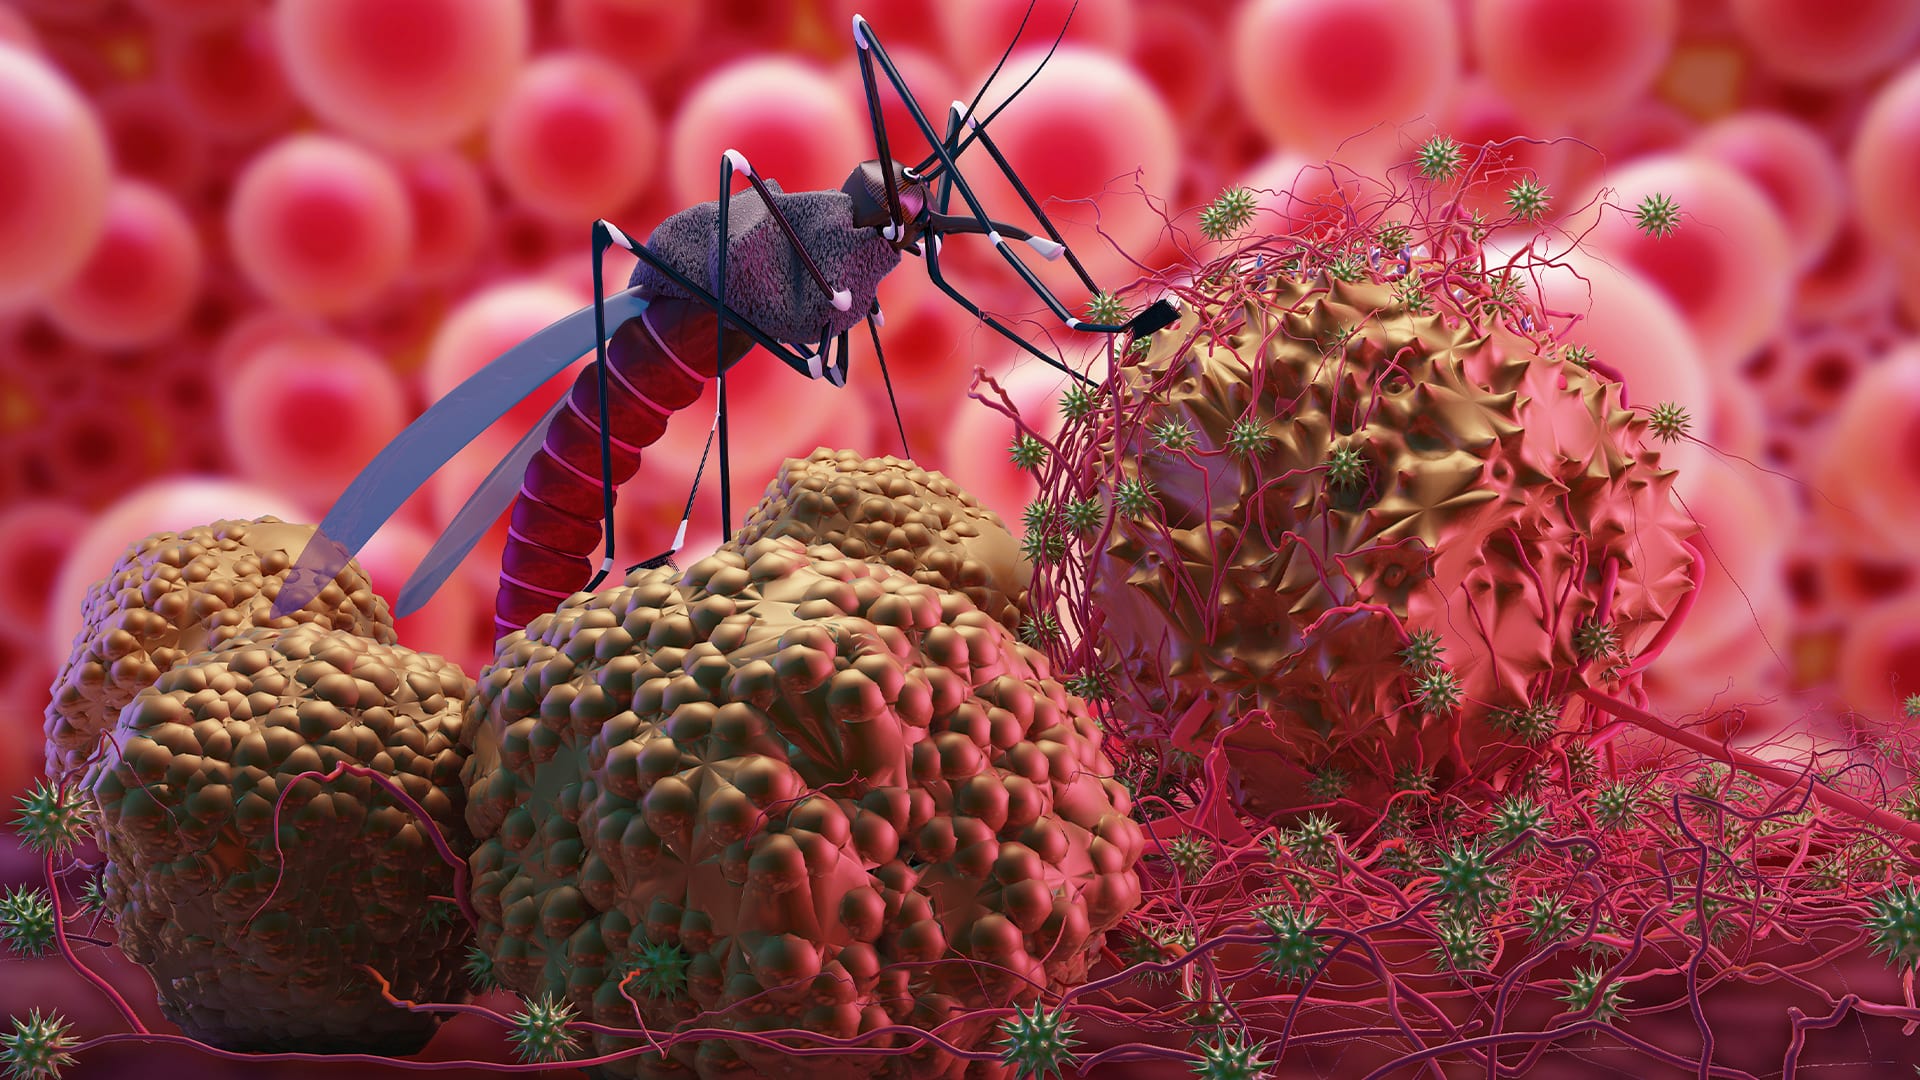 Малярия: одно из самых распространенных инфекционных заболеваний